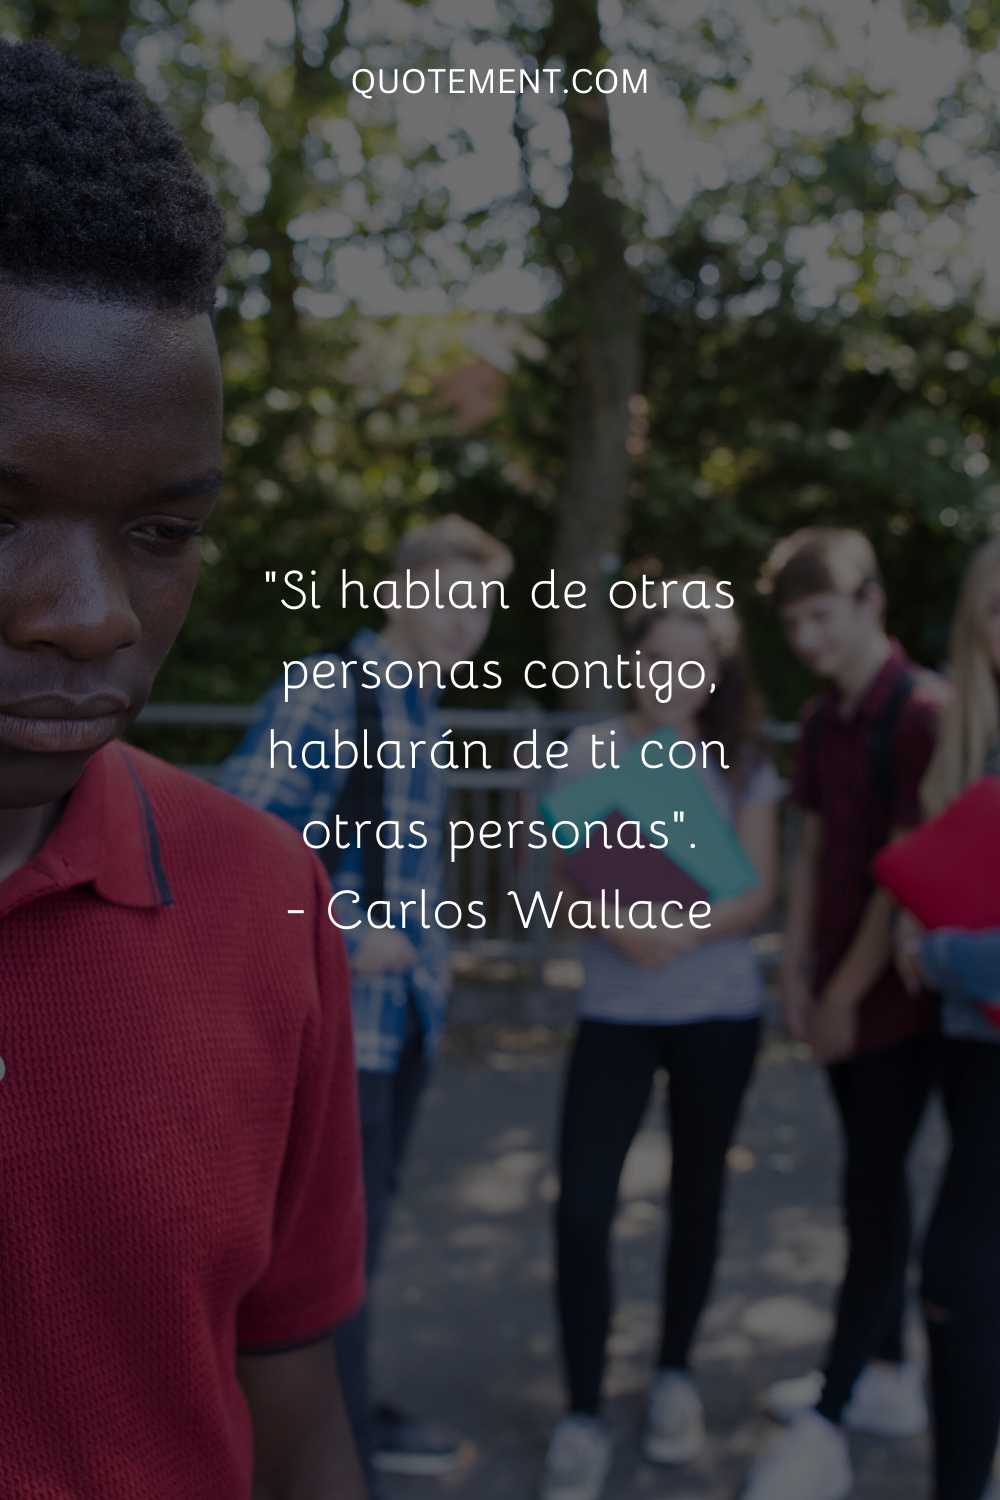 "Si hablan de otras personas contigo, hablarán de ti con otras personas". - Carlos Wallace